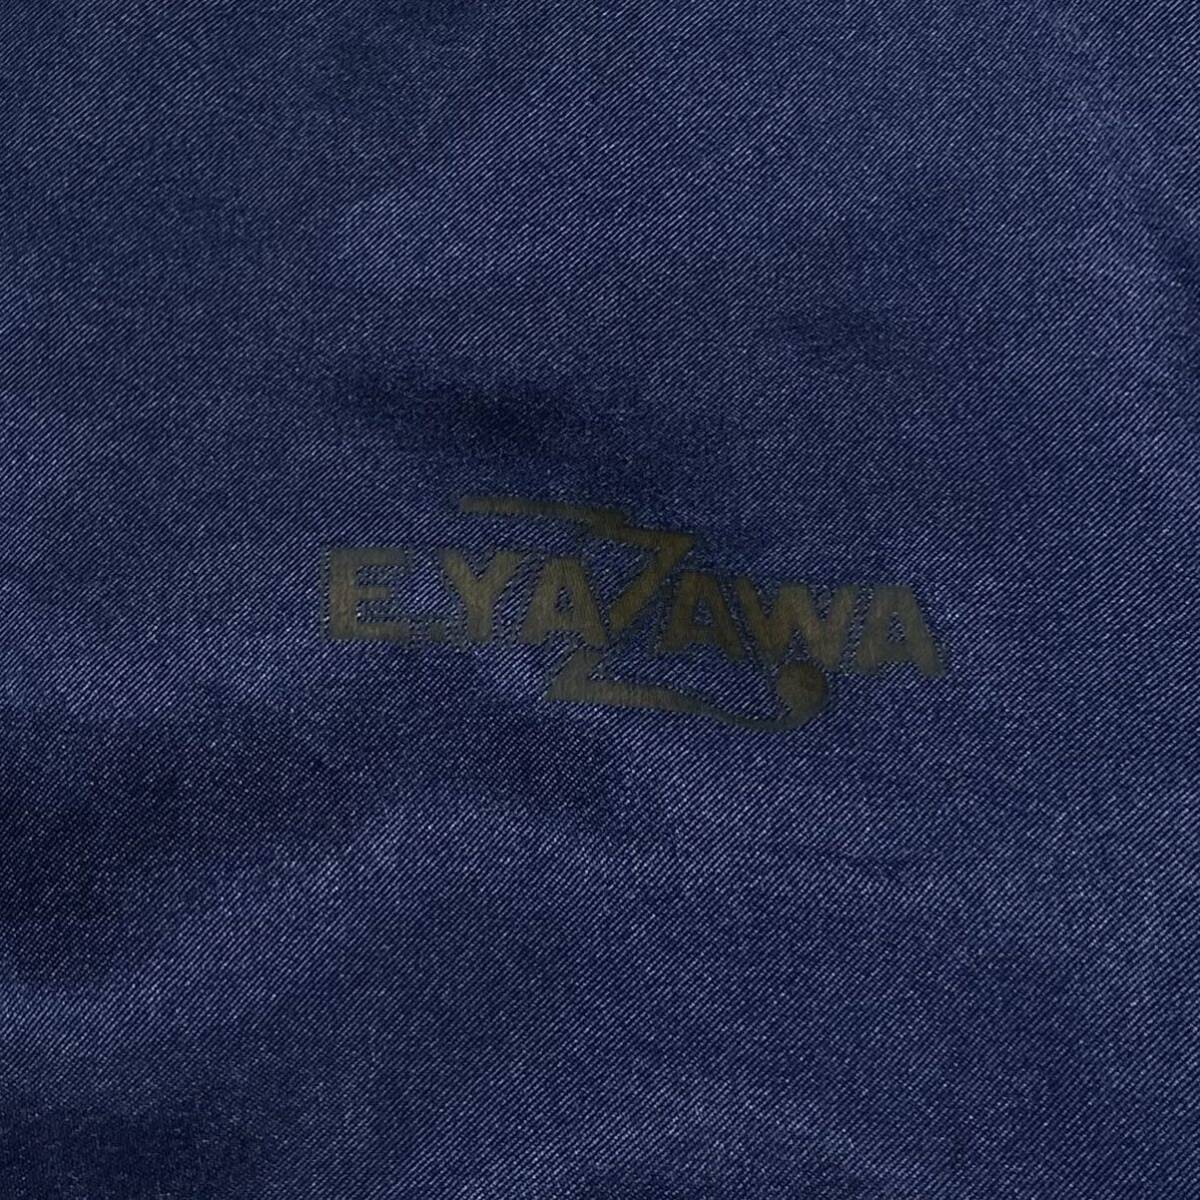  矢沢永吉/PREMIUM MALT'S スカジャン メンズL相当 ネイビー シャンパンゴールド系 背面刺繍ロゴ YAZAWA 中綿無し サテンジャケットの画像9